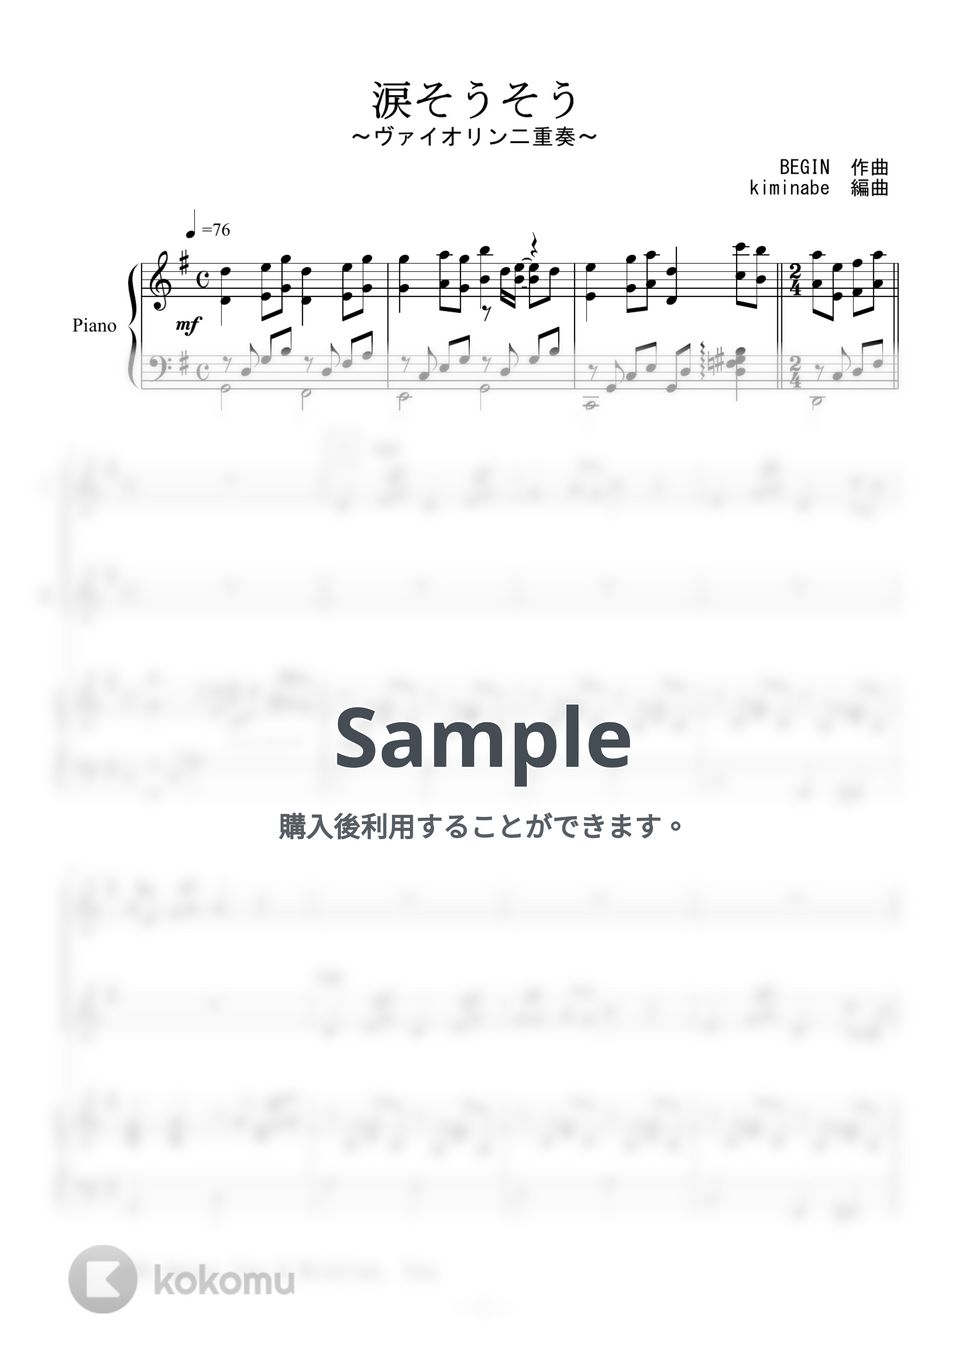 森山良子 - 涙そうそう (ヴァイオリン二重奏) by kiminabe